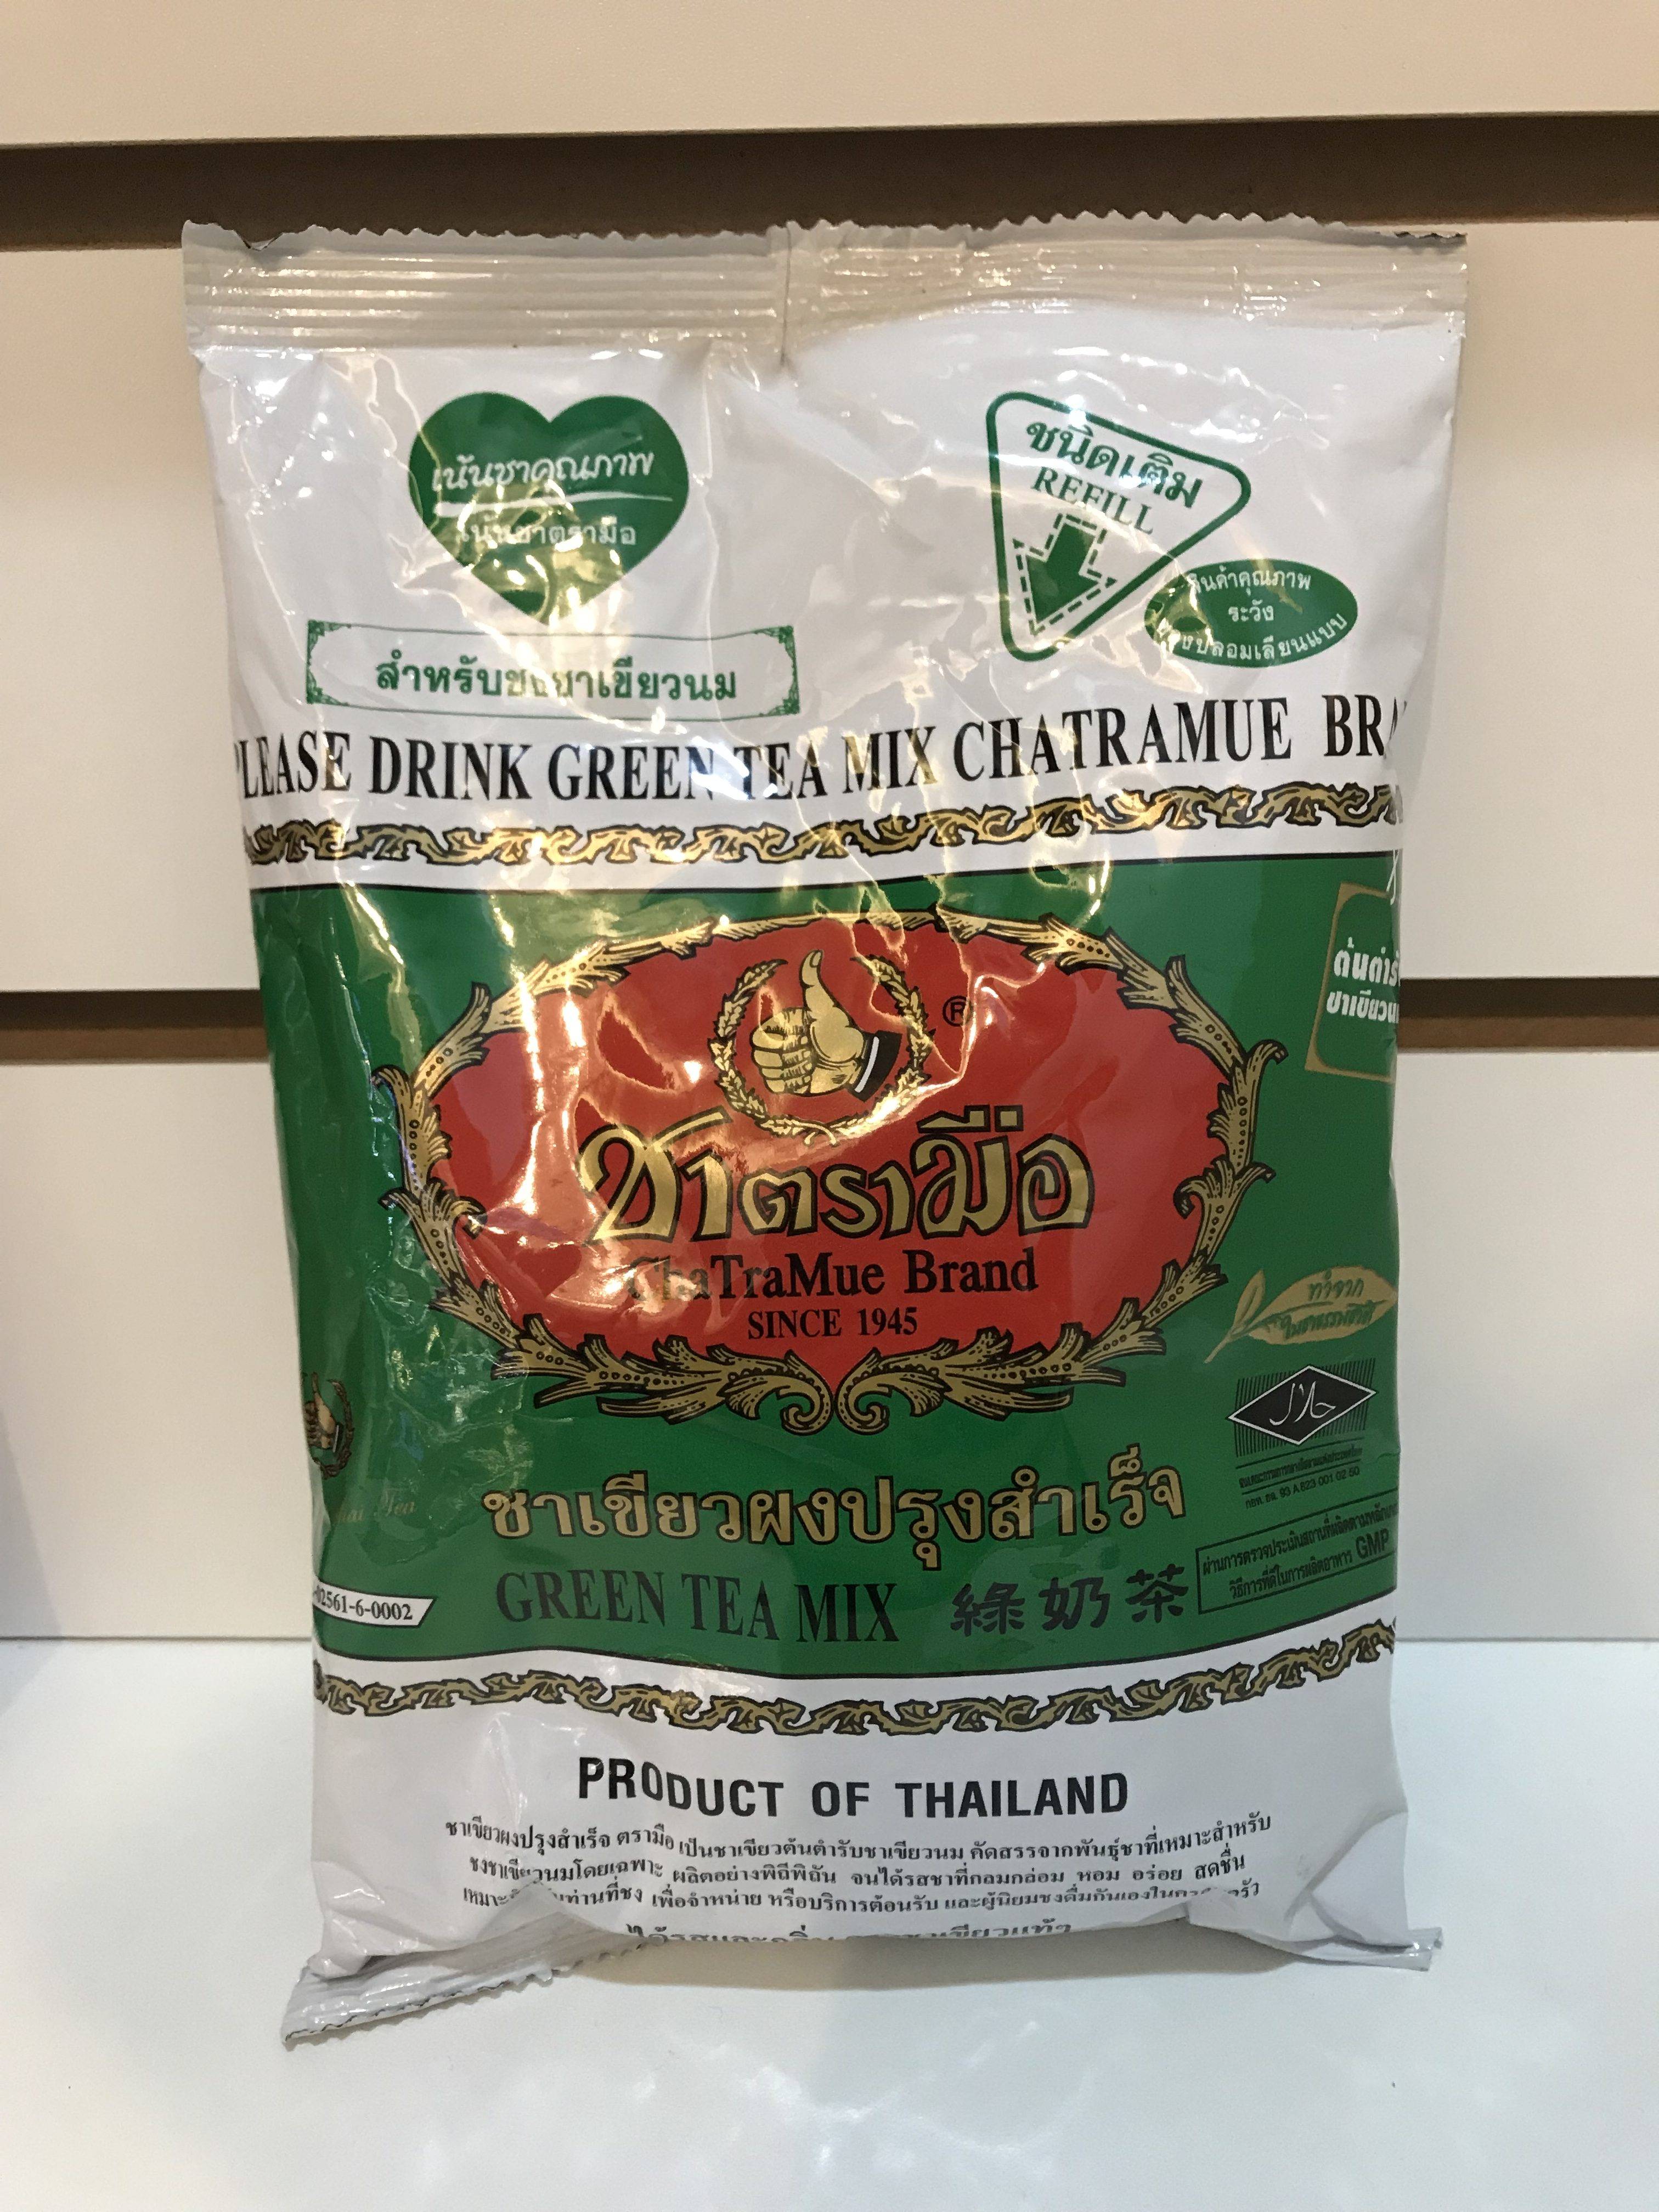 Свойства тайский красный чай thai tea mix number one brand 400 гр ✓ полезные свойства